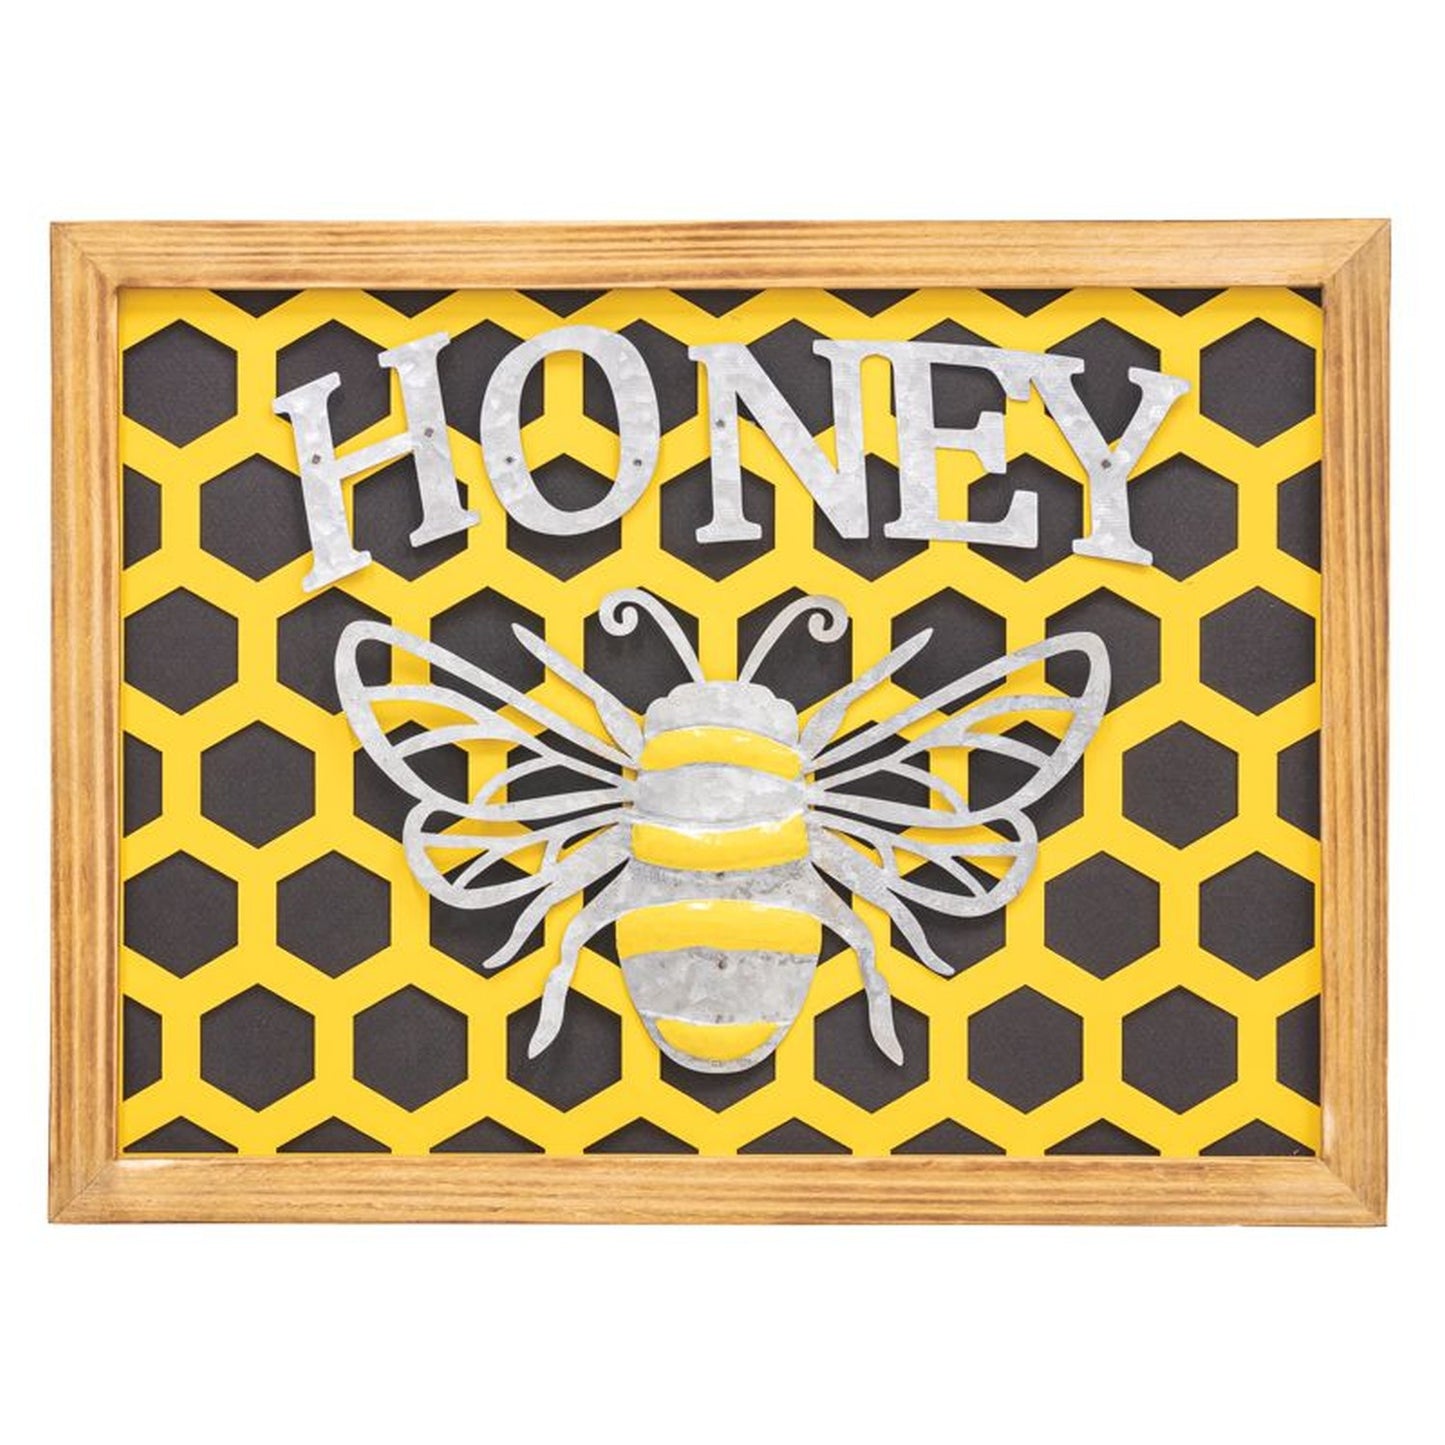 Hanna's Handiworks Honeycomb Honeybee Sign